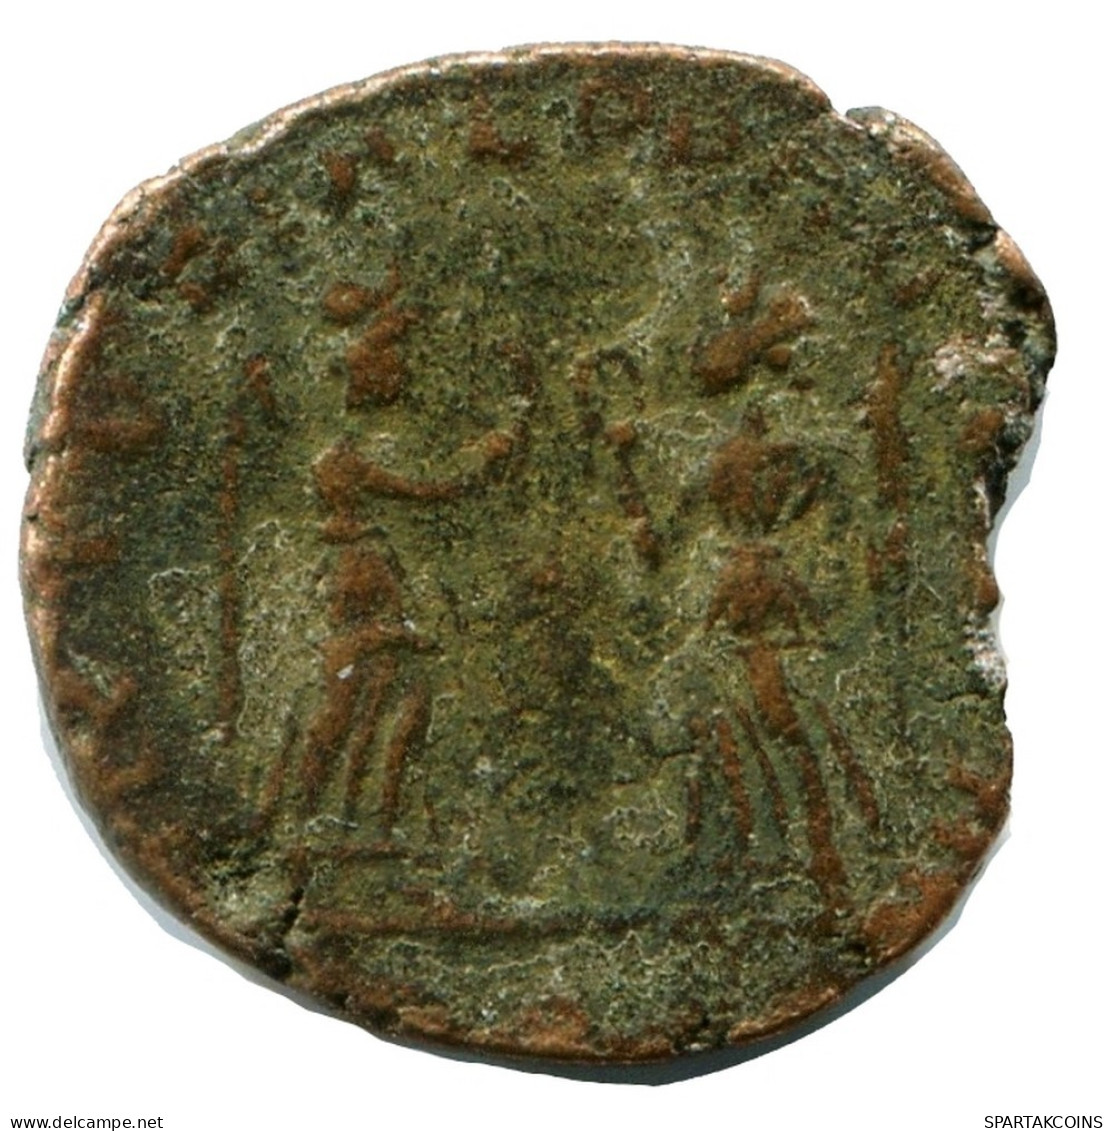 CONSTANS MINTED IN ROME ITALY FOUND IN IHNASYAH HOARD EGYPT #ANC11527.14.F.A - Der Christlischen Kaiser (307 / 363)